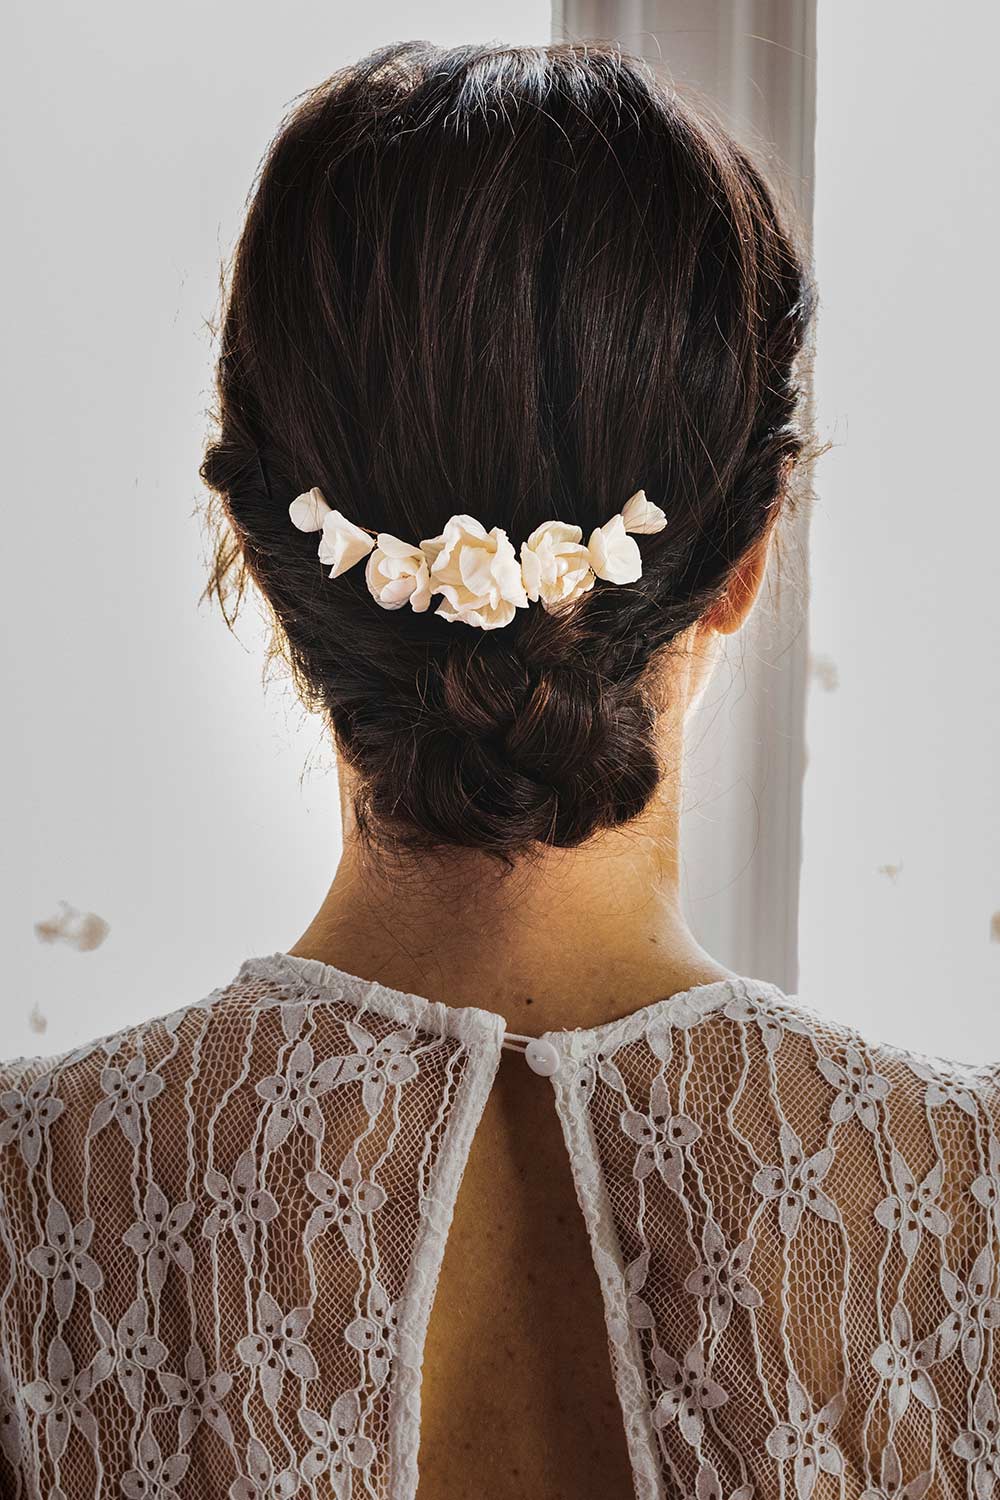 Peigne mariée porcelaine froide - Coraly T - Les Perles de la Bastide